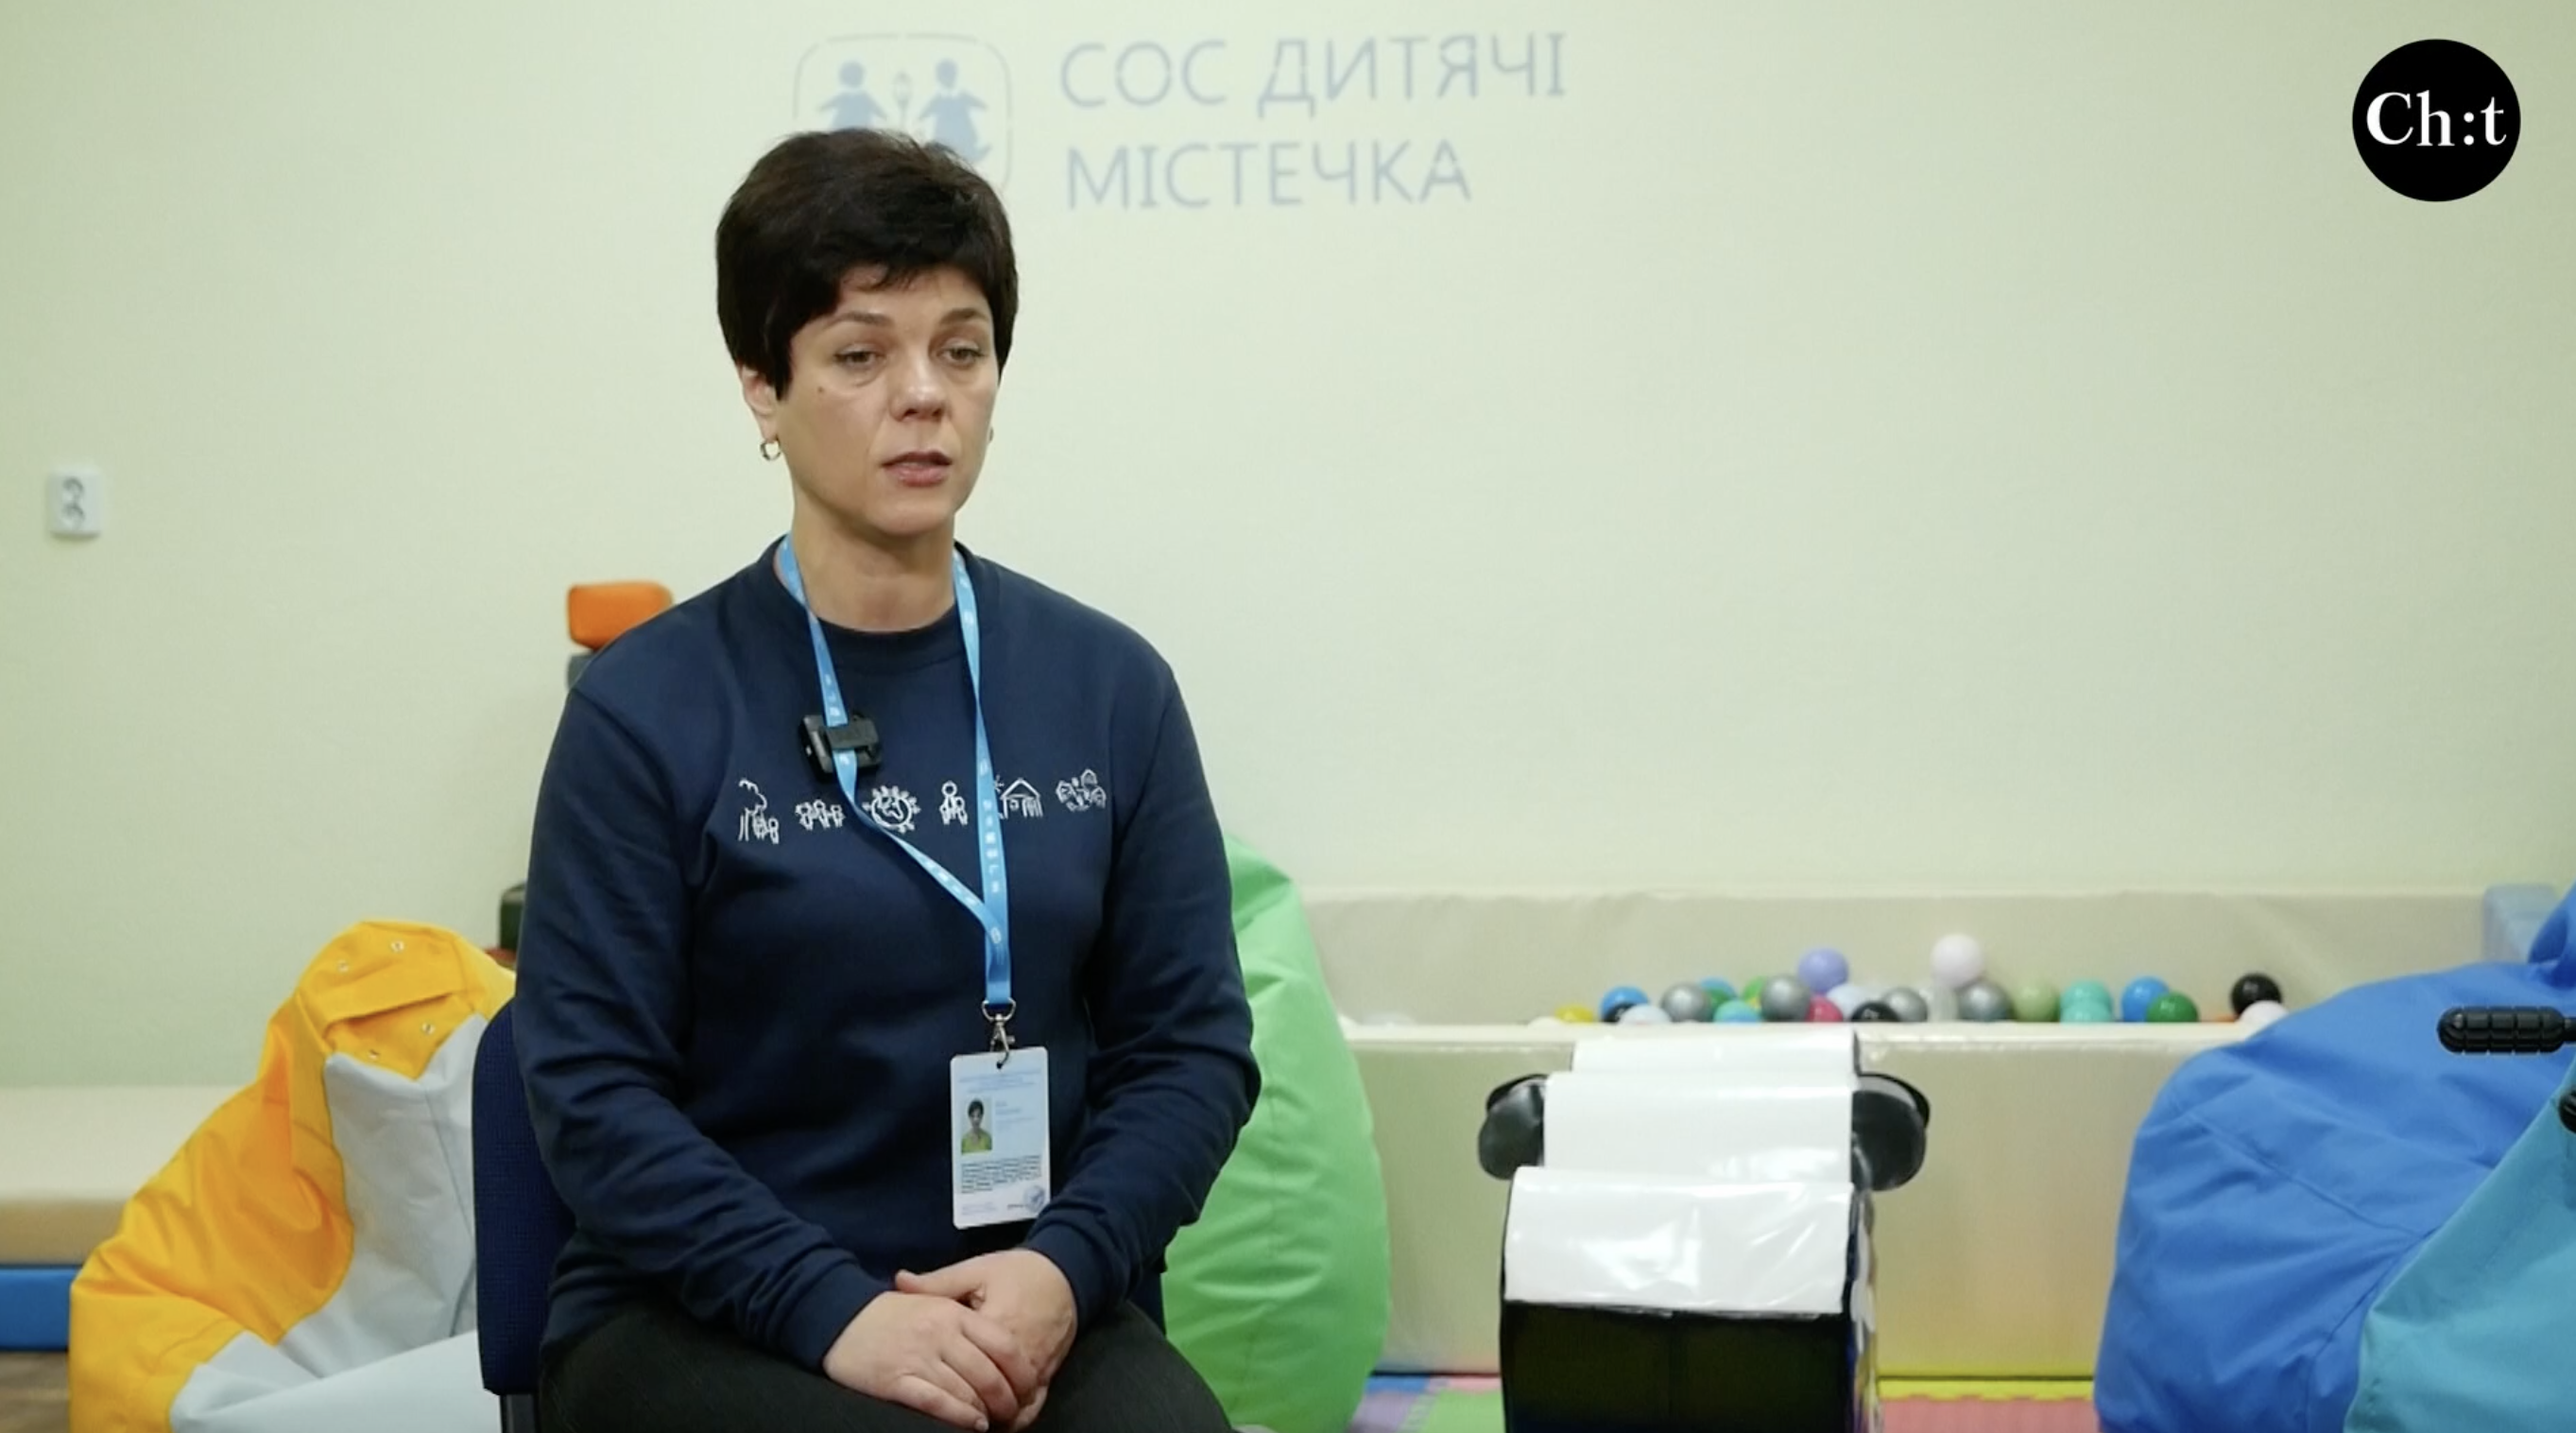 Вікторія Кнуренко, менеджерка мобільної бригади «СОС Дитячі містечка Україна»